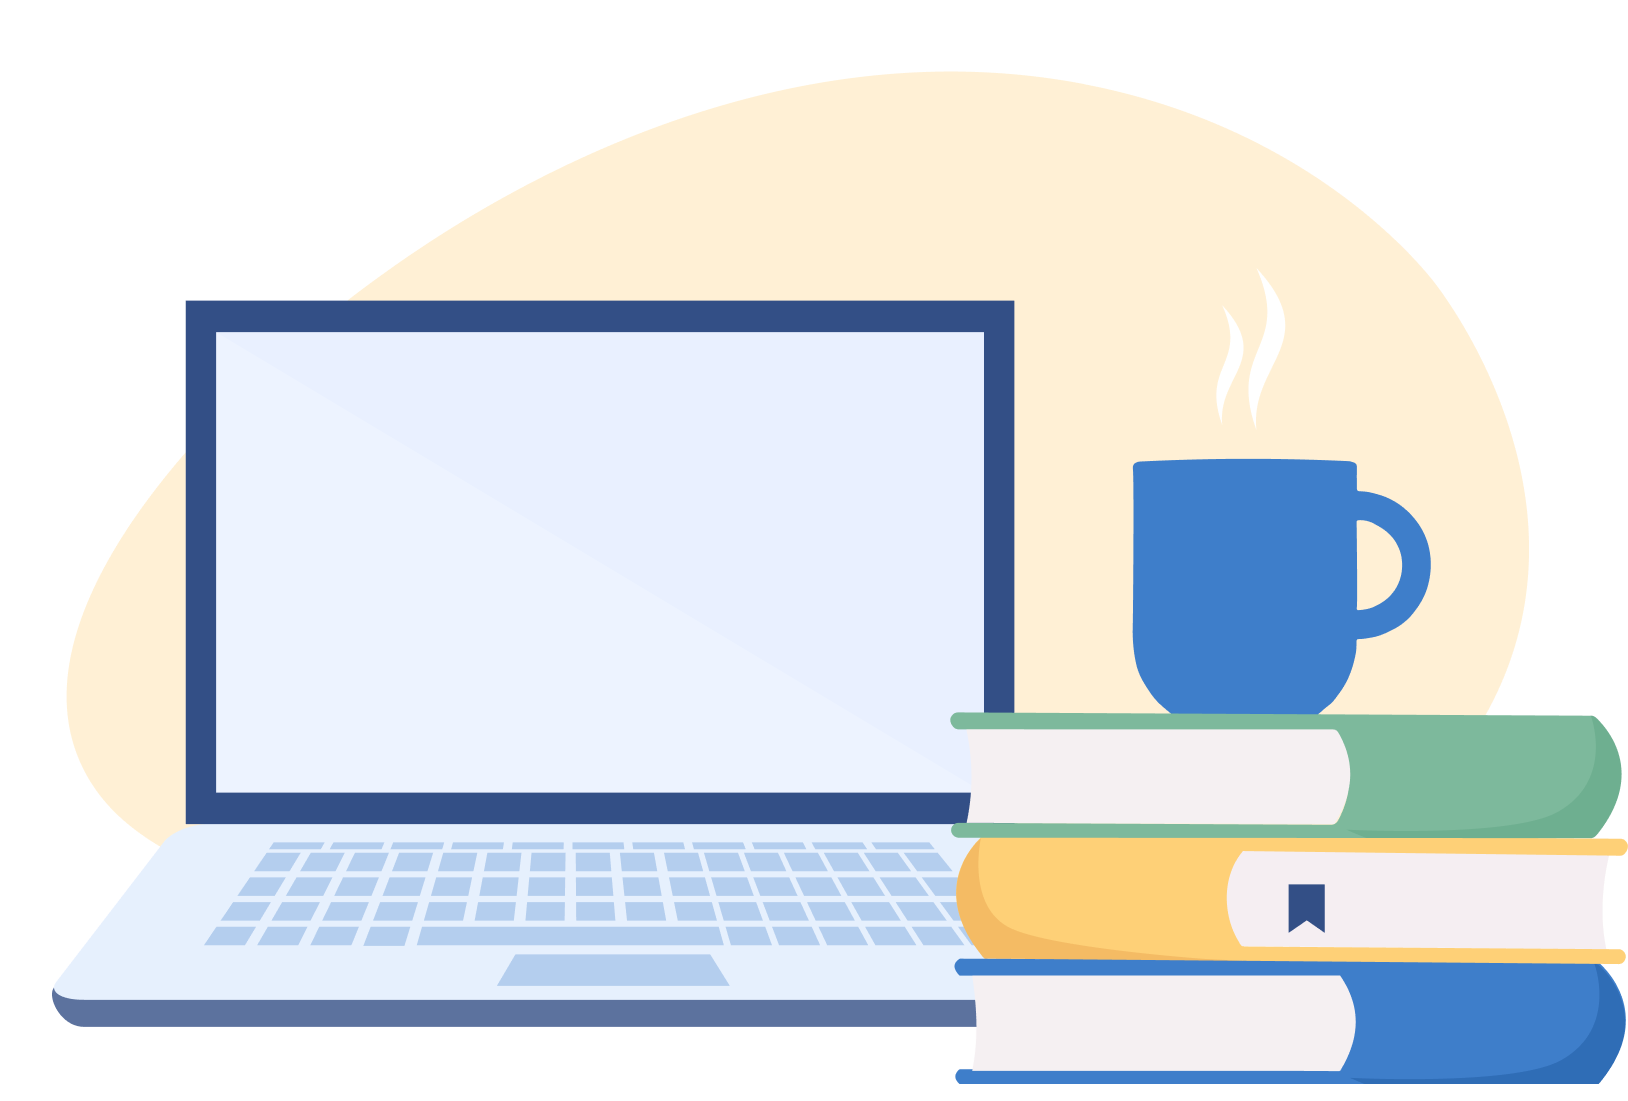 Clases particulares: Ilustración de ordenador portátil con libros y taza caliente